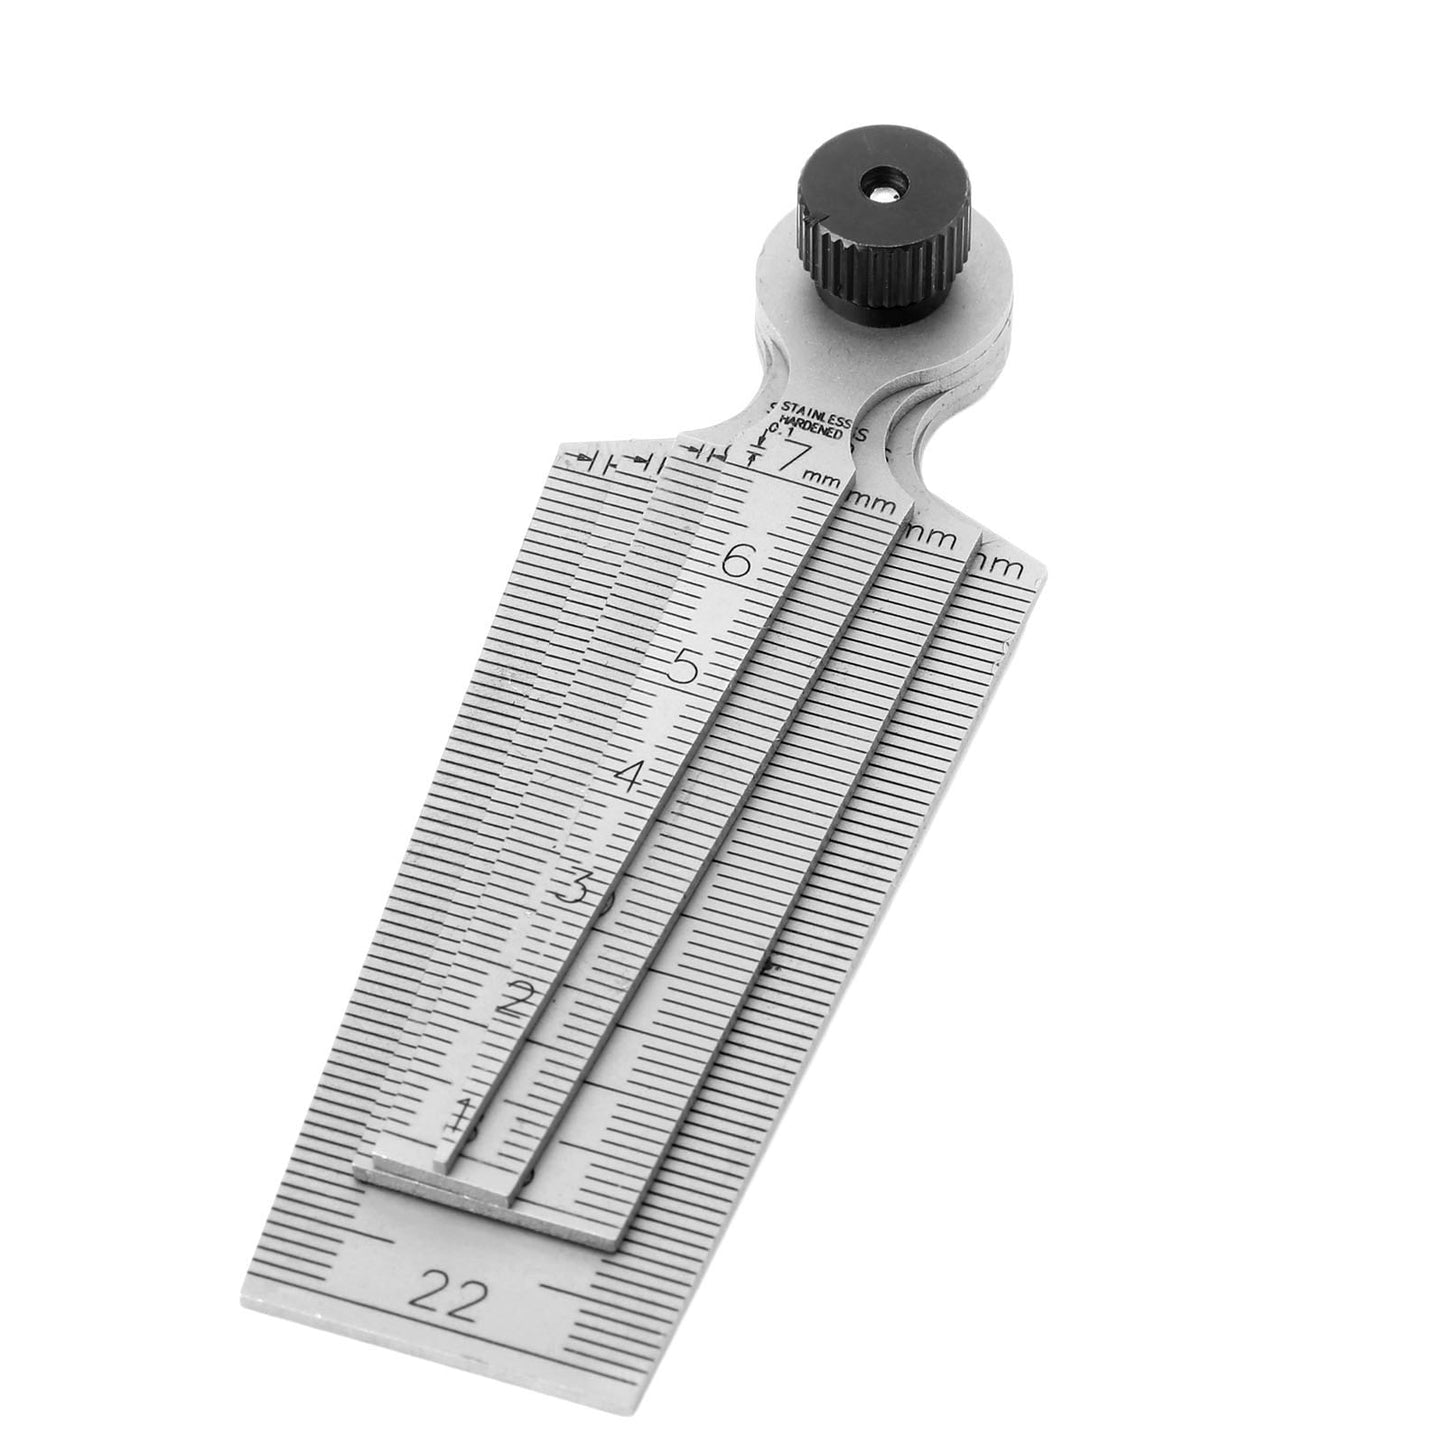 0-29mm Stainless Steel Metric Taper Gauge: 4-in-1 Measuring Tool